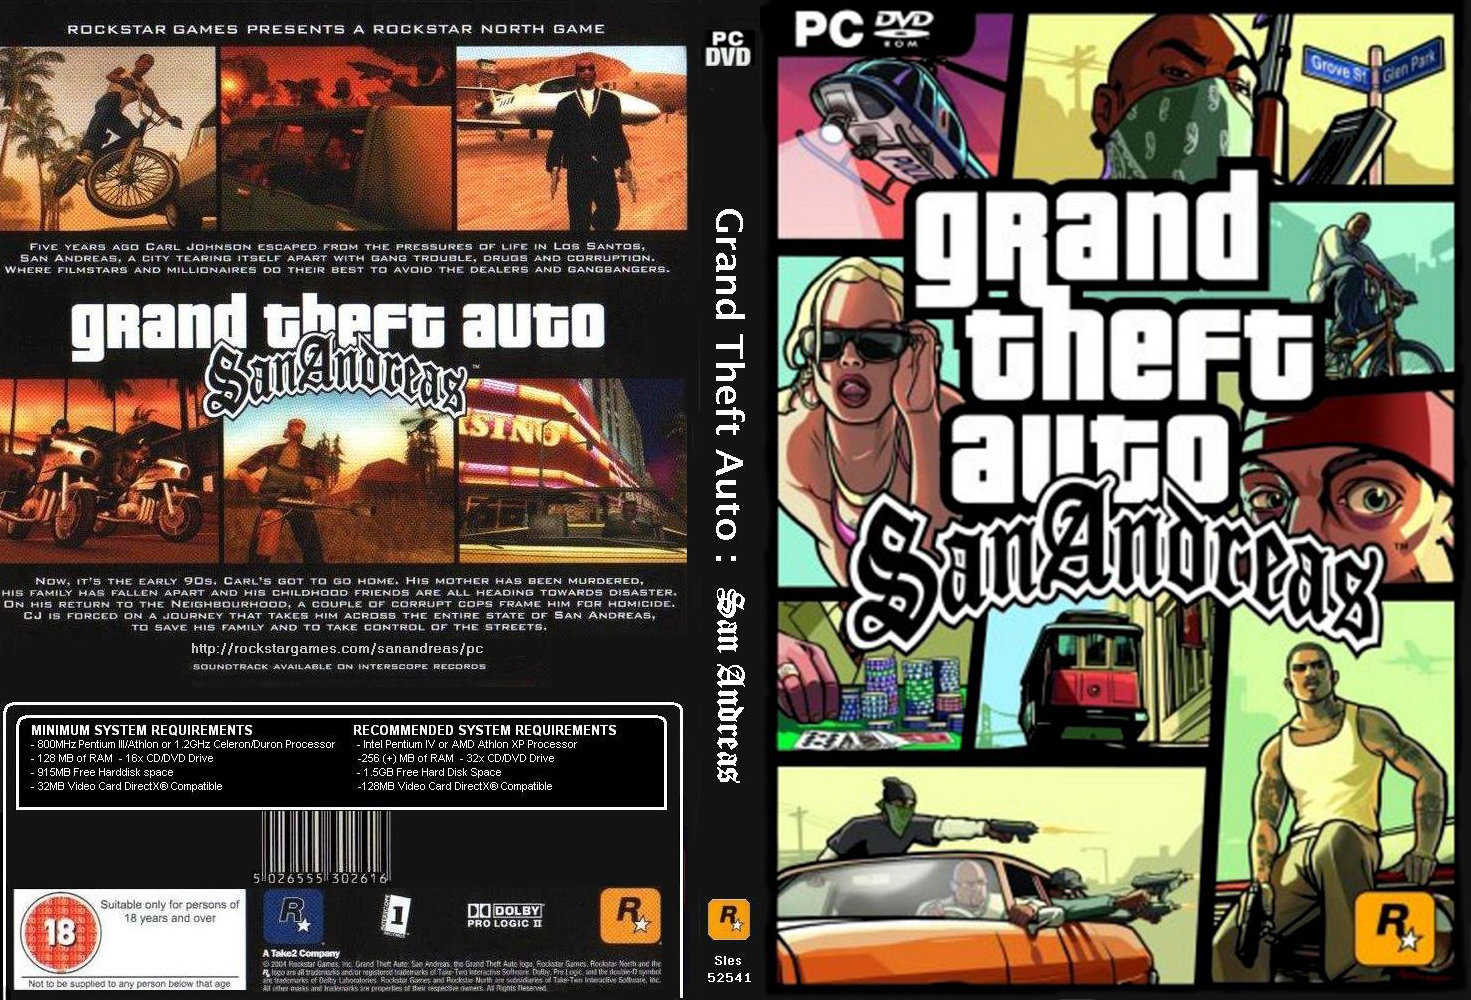 GTA San Andreas - Cadê o Game - Obtendo o Tanque S.W.A.T